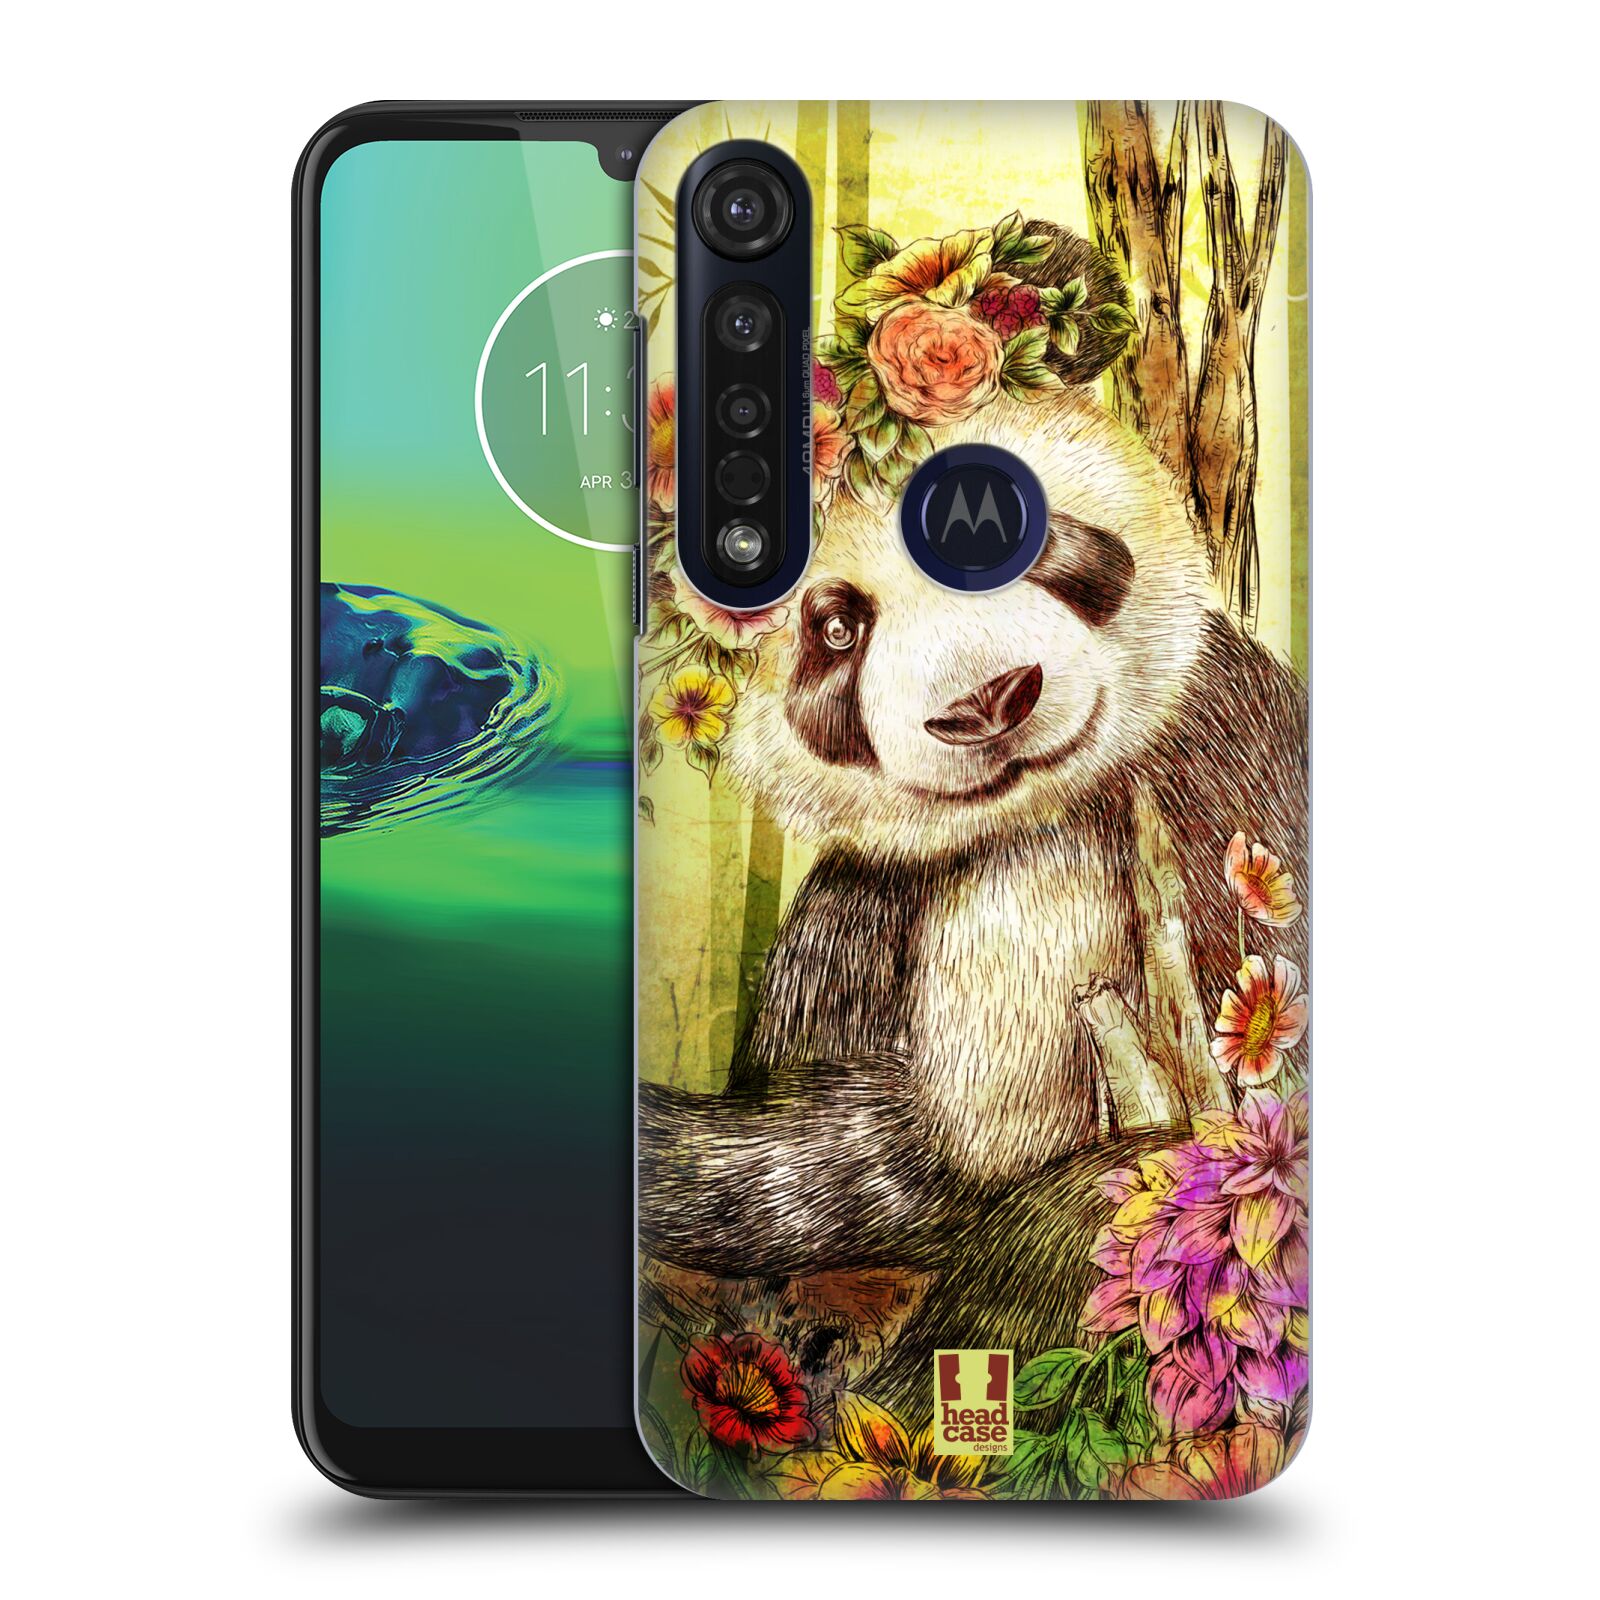 Pouzdro na mobil Motorola Moto G8 PLUS - HEAD CASE - vzor Květinová zvířáta MEDVÍDEK PANDA